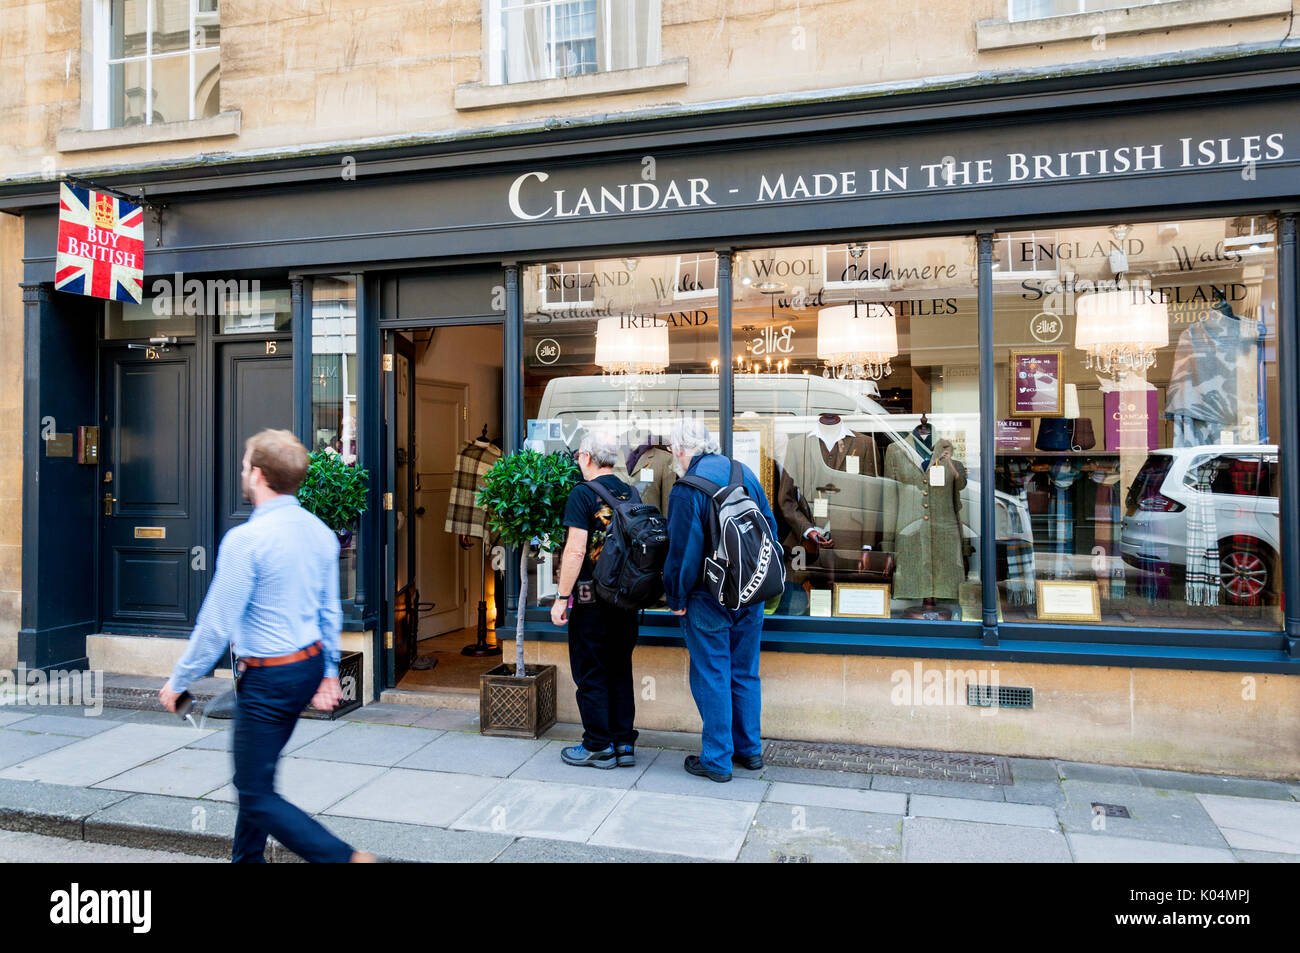 Clandar gemacht auf den Britischen Inseln shop in Bath, Somerset, Großbritannien Stockfoto